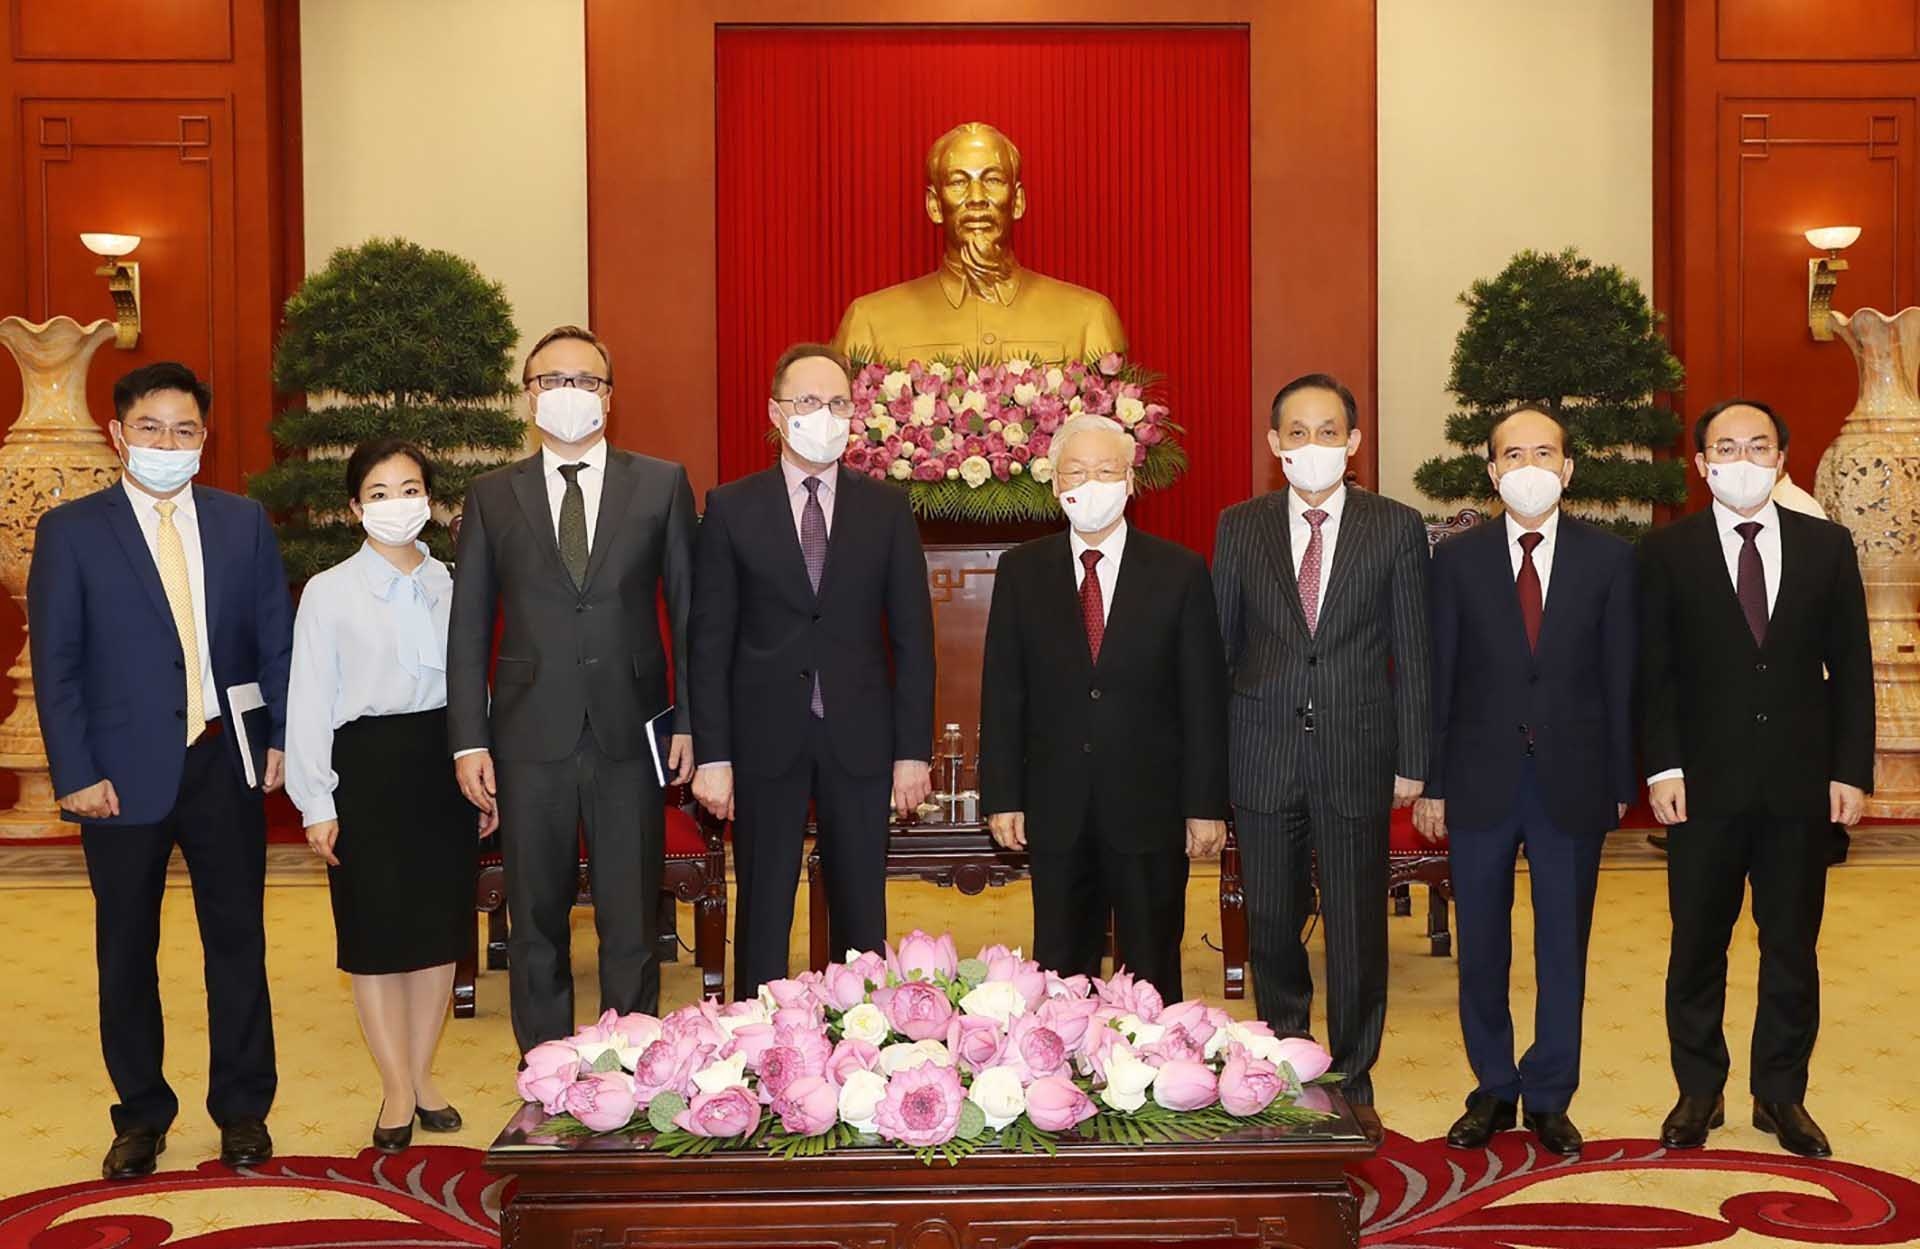 Tổng Bí thư Nguyễn Phú Trọng và Đại sứ Liên bang Nga Gennady Bezdetko chụp ảnh chung với các đại biểu. (Nguồn: TTXVN)